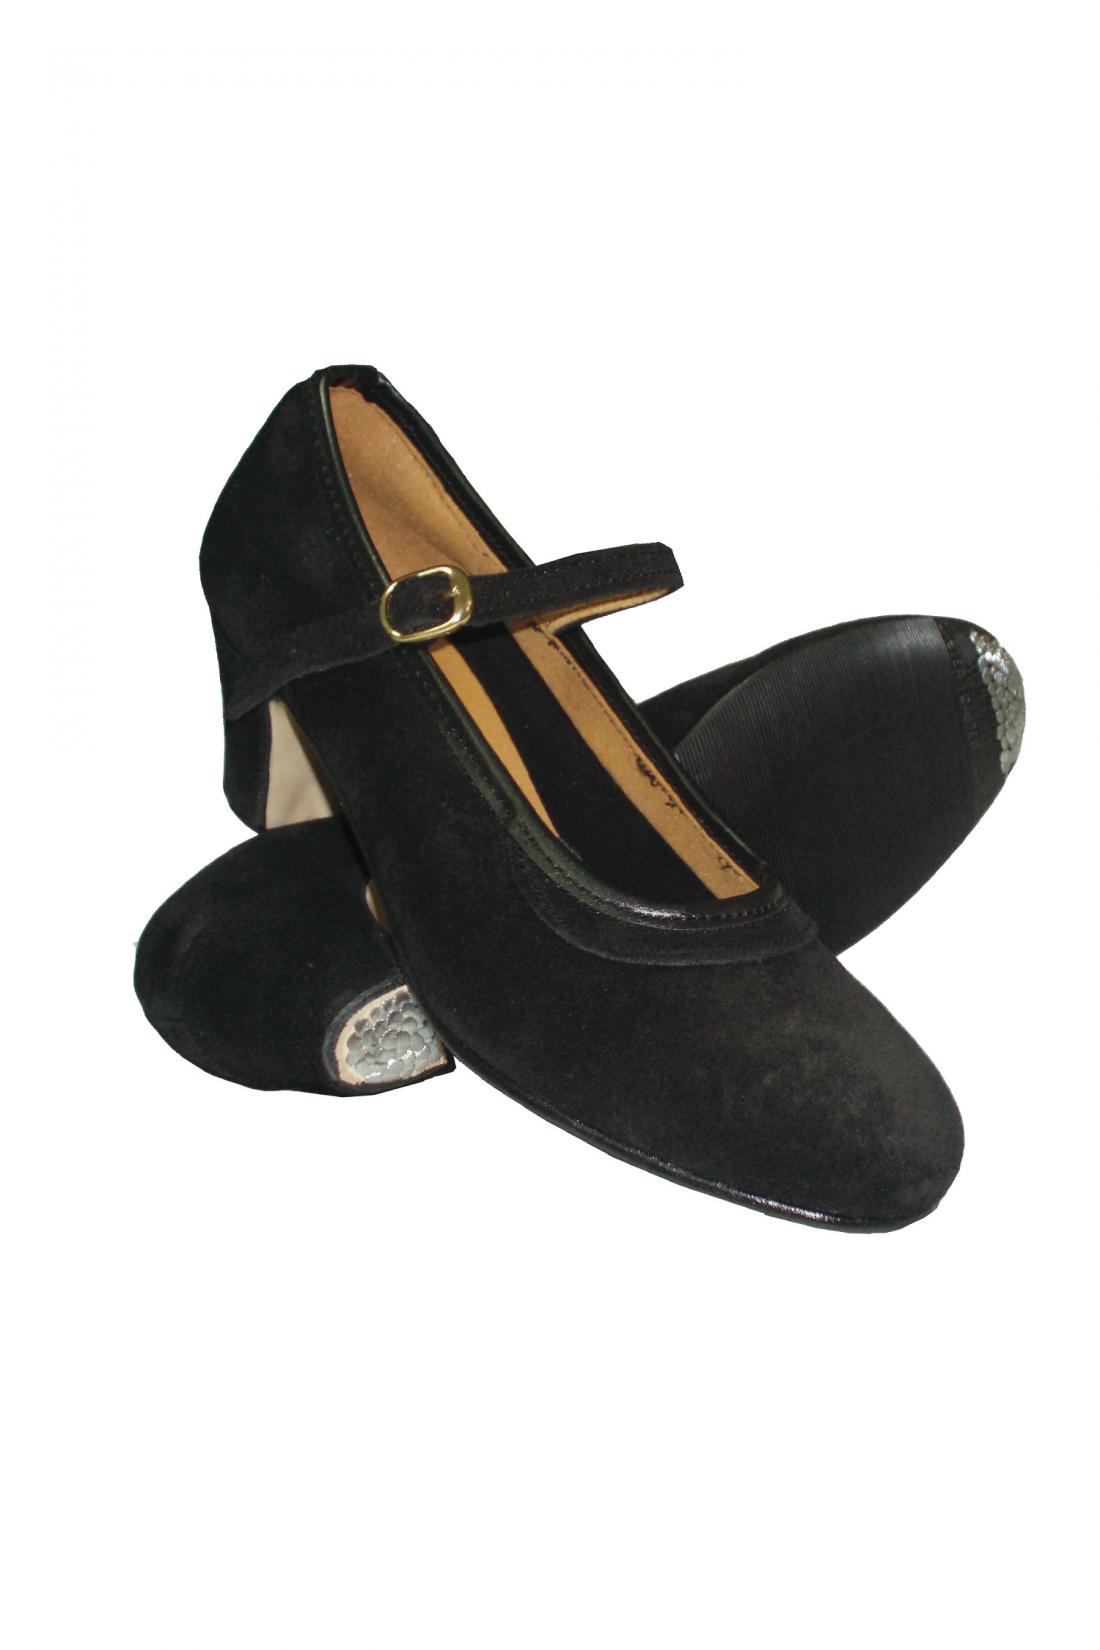 Zapatos de Flamenco Negros de Danza Española